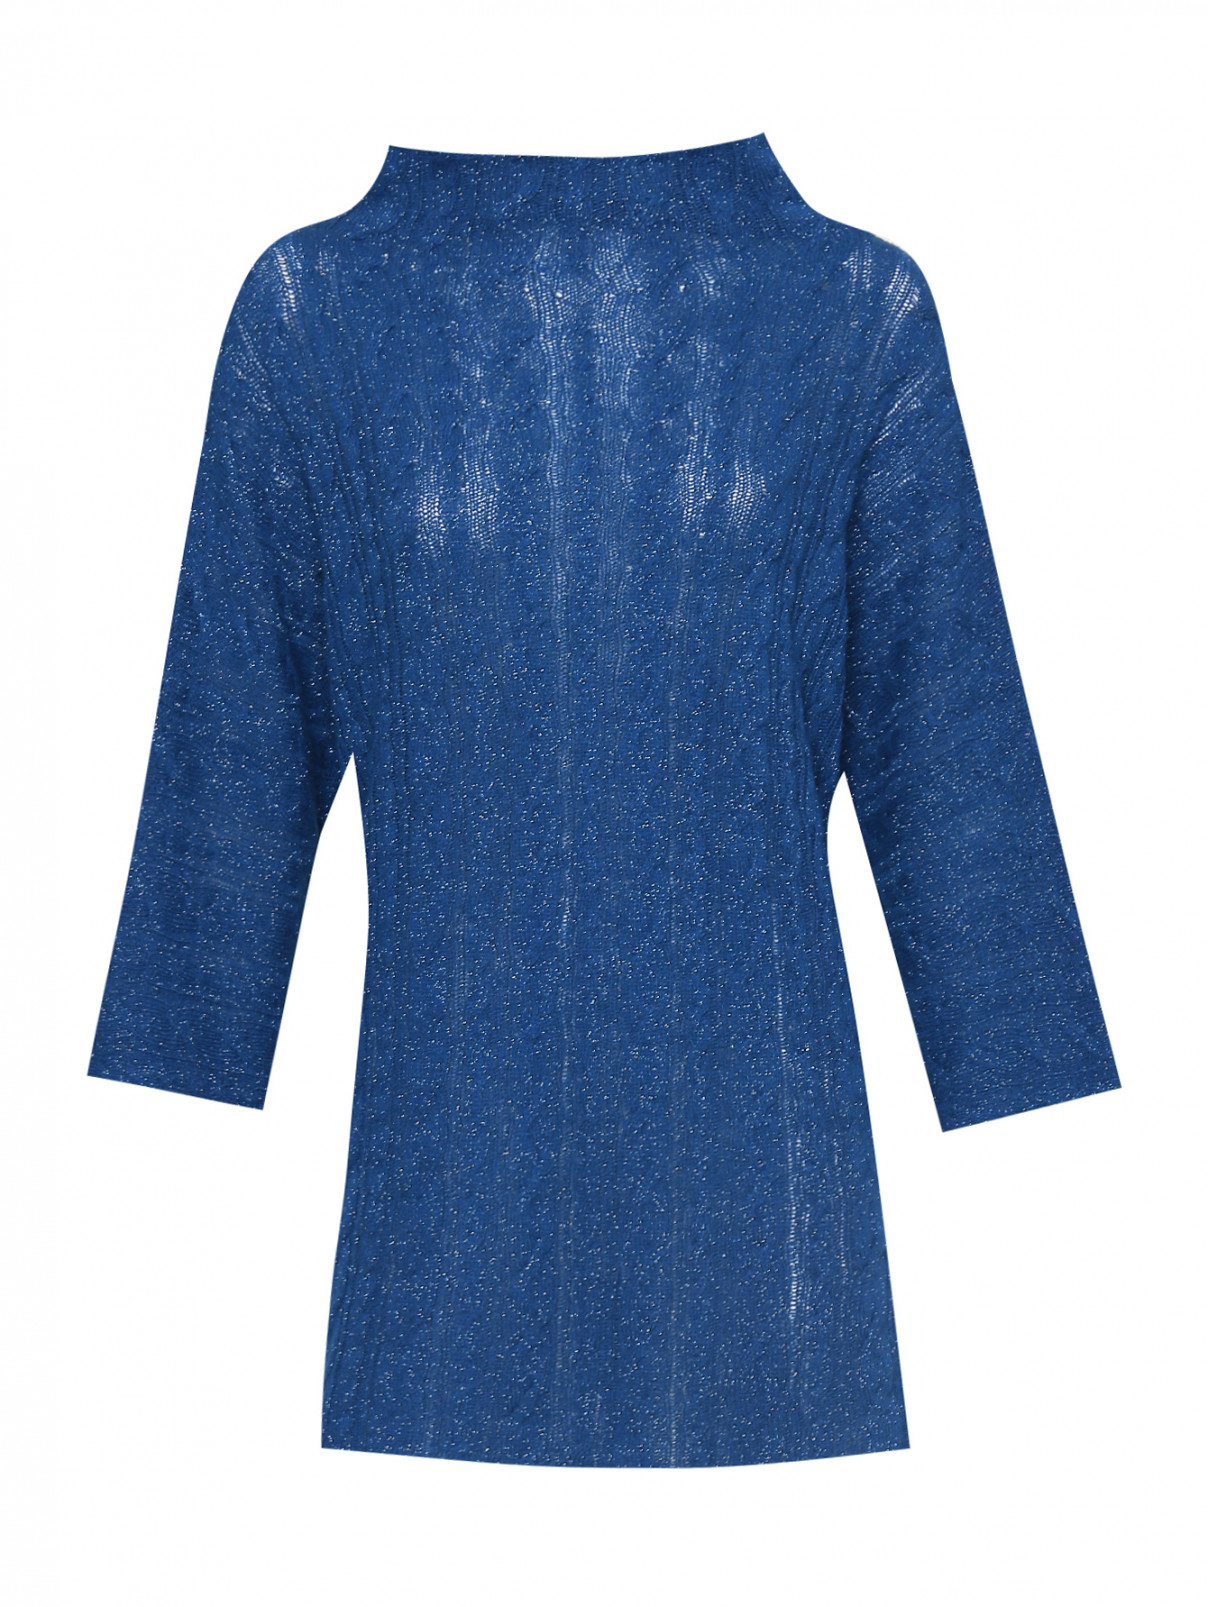 Джемпер из шерсти, вискозы и кашемира с металлизированной нитью Etro  –  Общий вид  – Цвет:  Синий